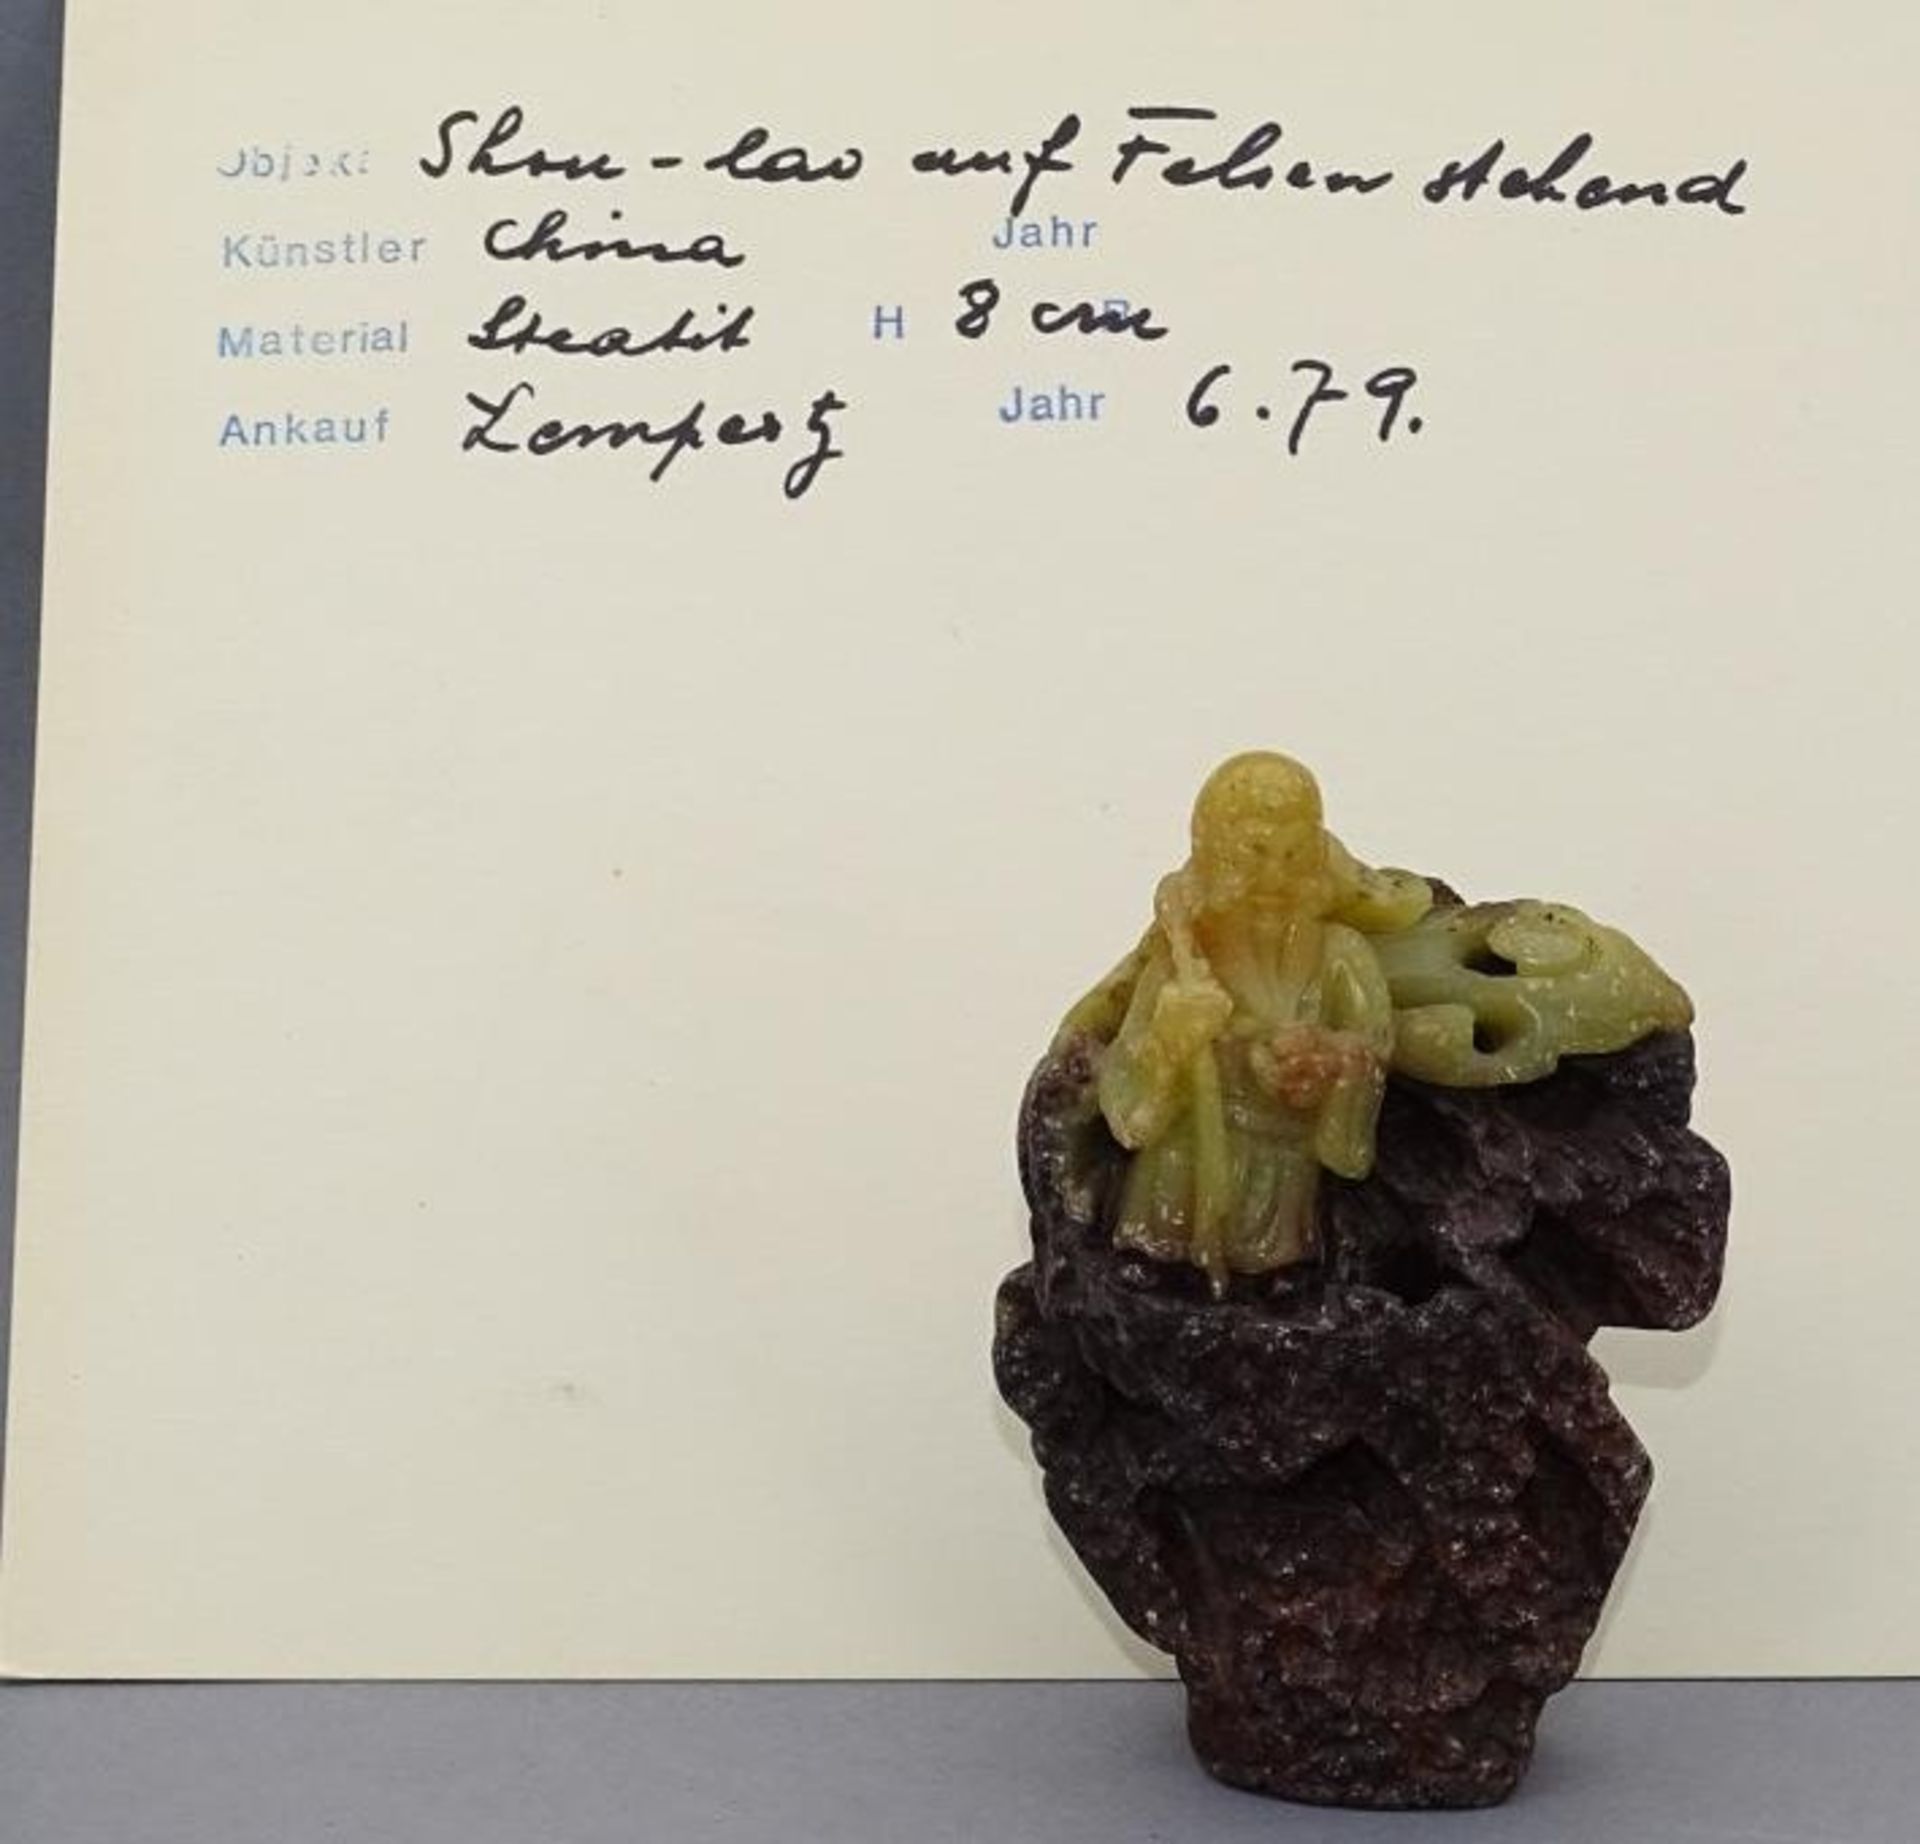 Speckstein-Schnitzerei, Shou-lau auf Felsen stehend, China, H-8 cm, B-6 cm, mit Karteikarte, gekauft - Image 7 of 9